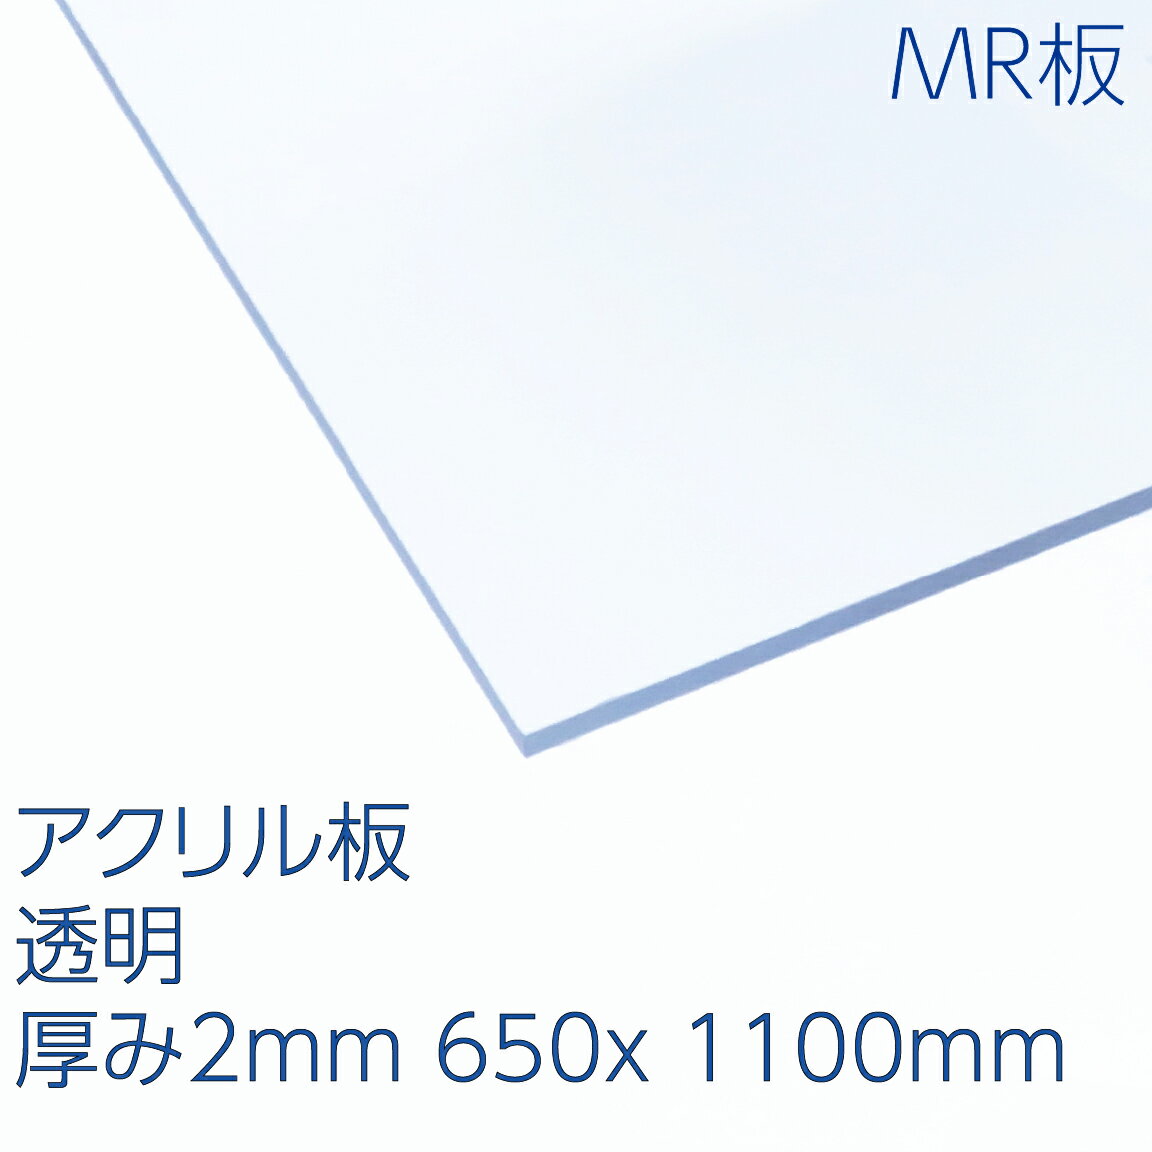 アクリサンデーMR板 アクリル 透明(MR2-001) 厚み2mm 650×1100mm キャスト板 ハードコート 表面硬化処理 耐擦傷性 天板 パーテーション DIY